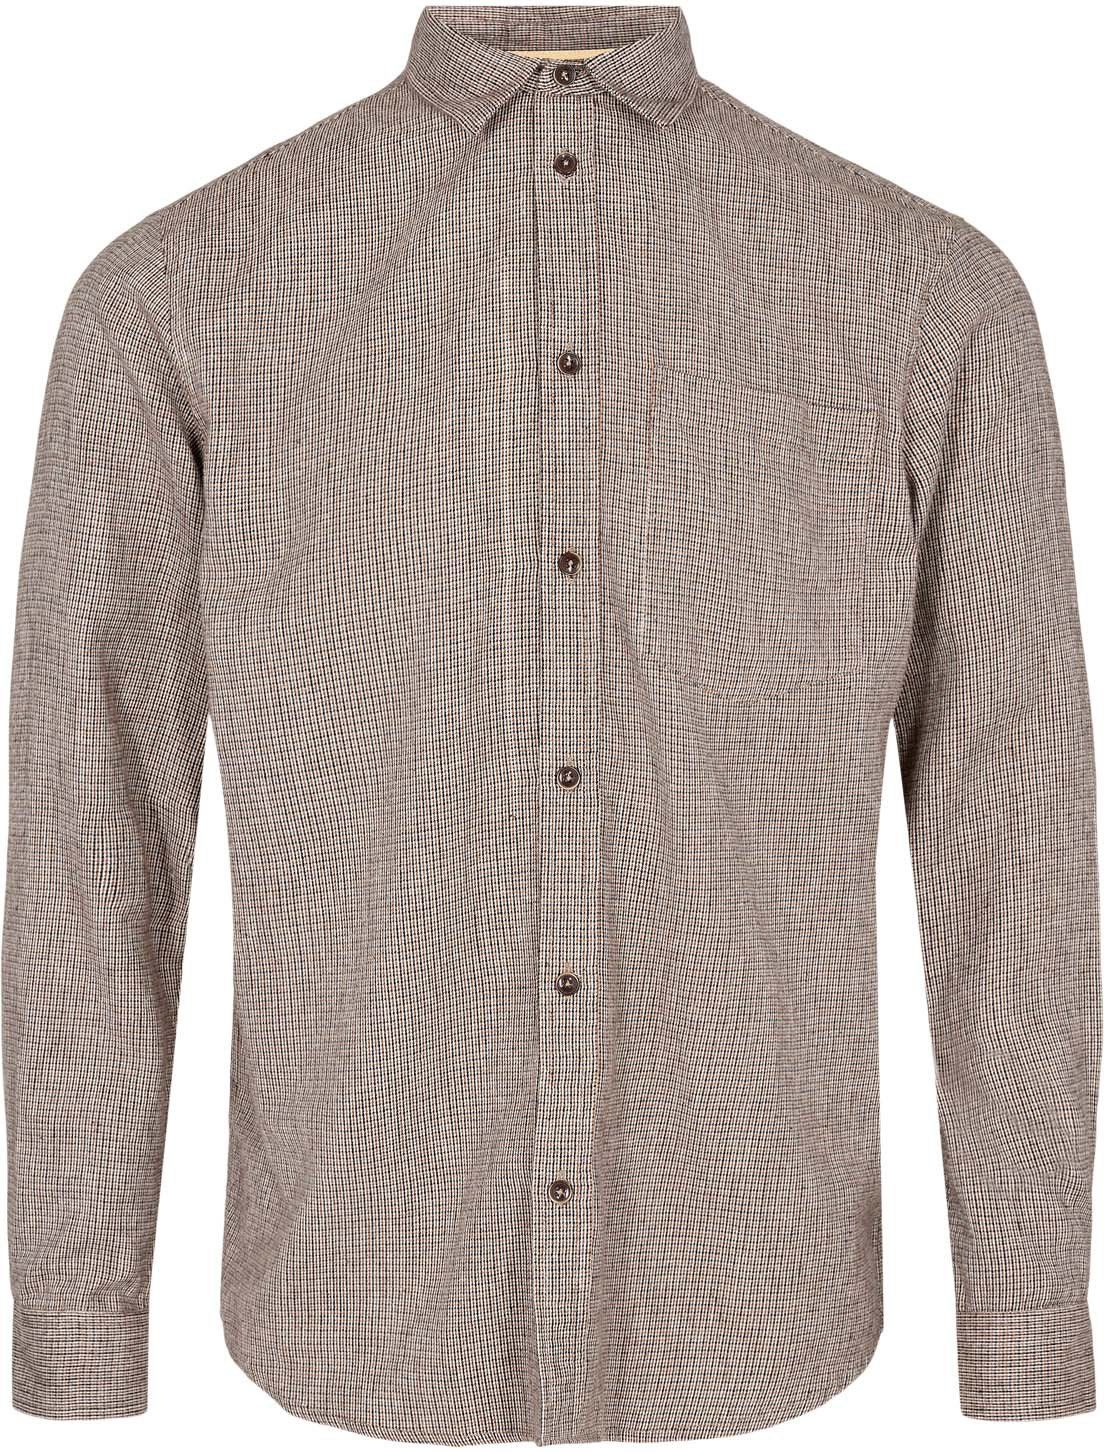 Anerkjendt Shirt Akkonrad Checks Grey Brown size L